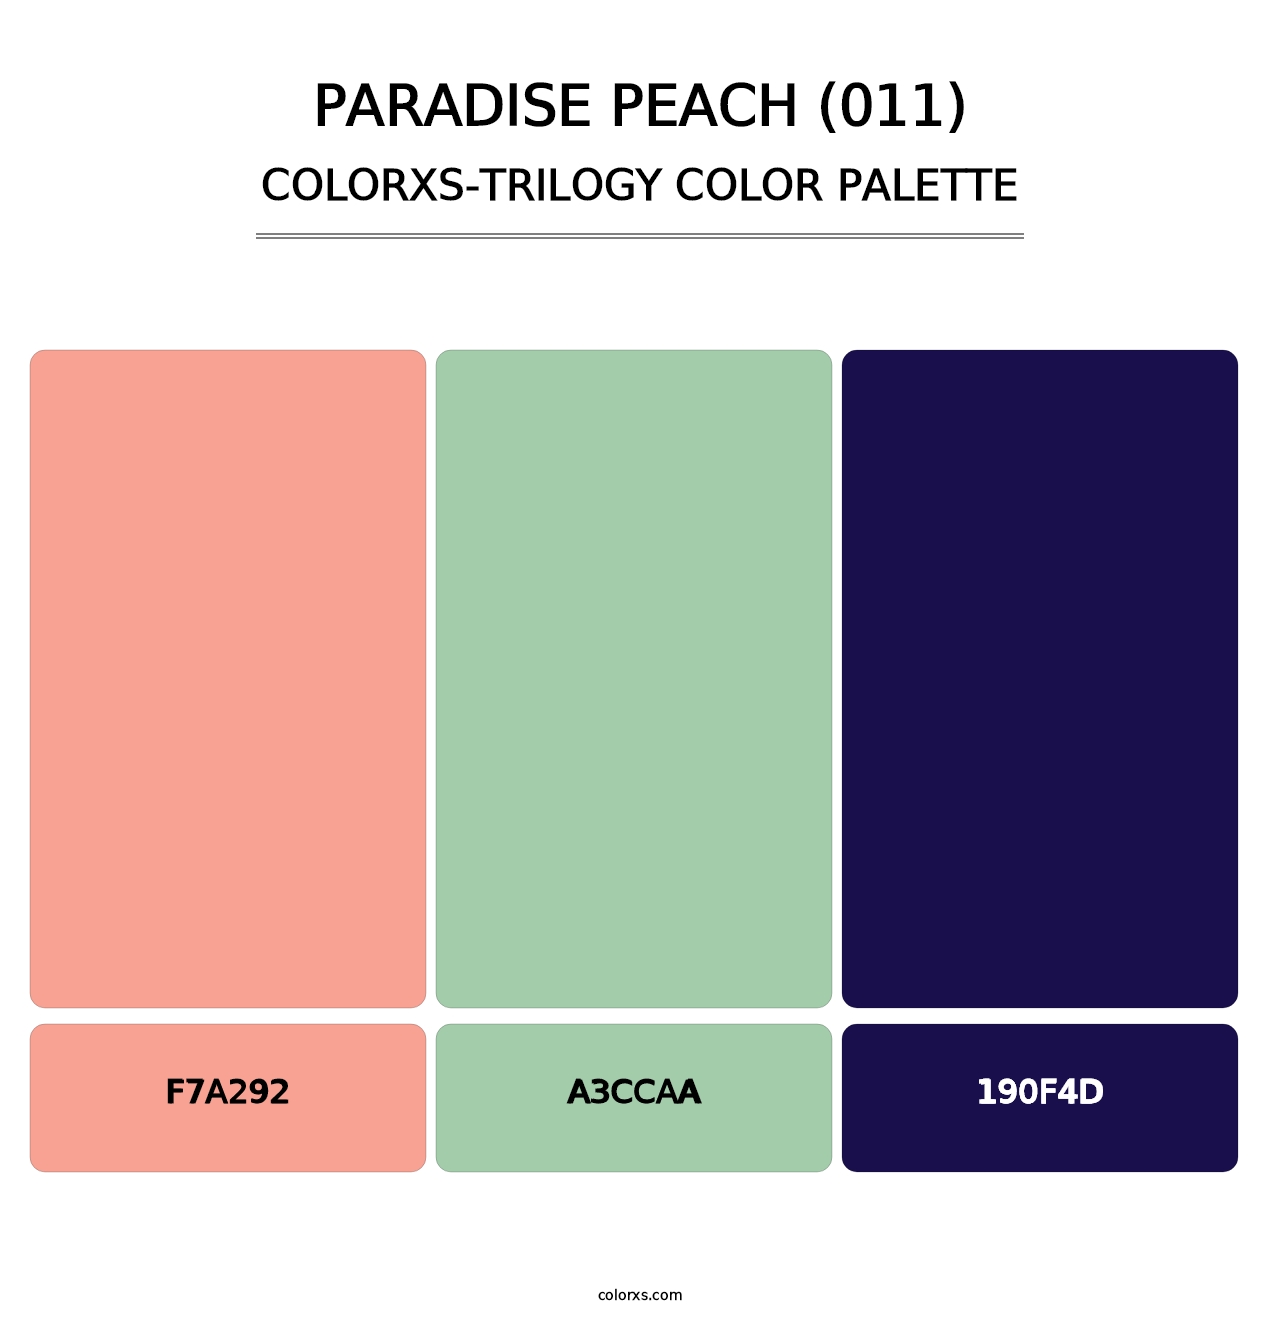 Paradise Peach (011) - Colorxs Trilogy Palette